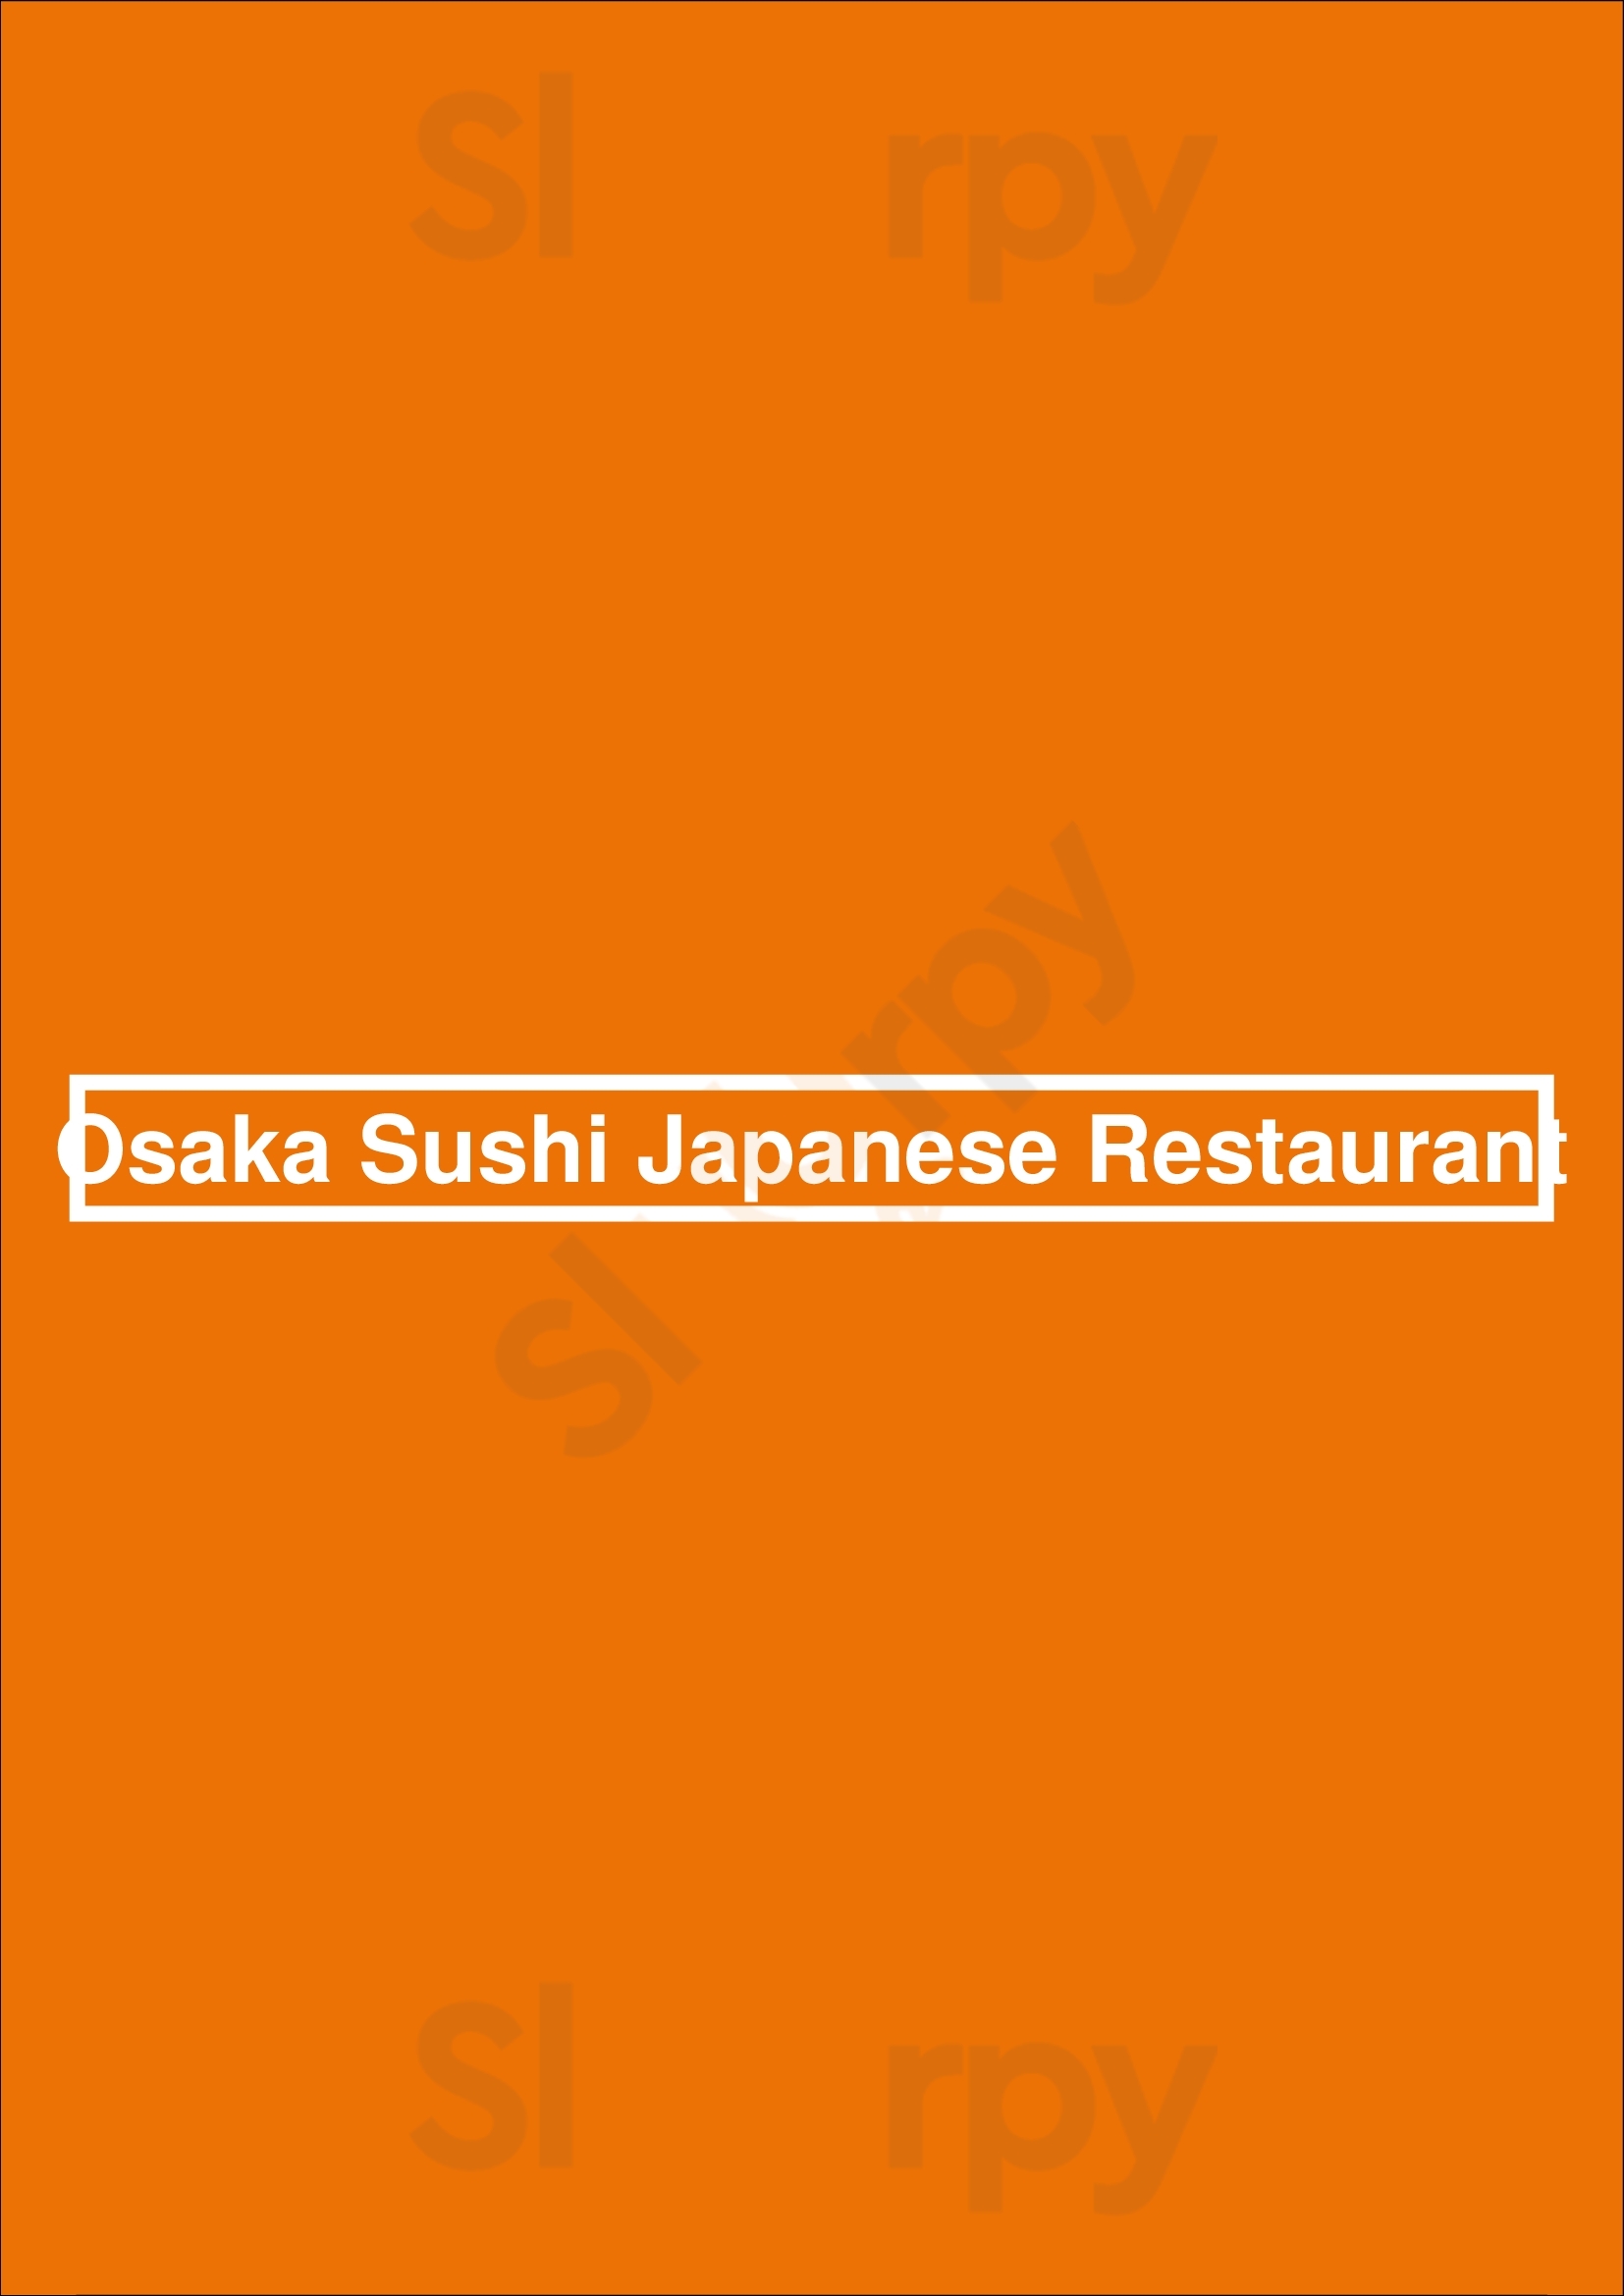 Osaka Sushi Japanese Restaurant Toronto Menu - 1